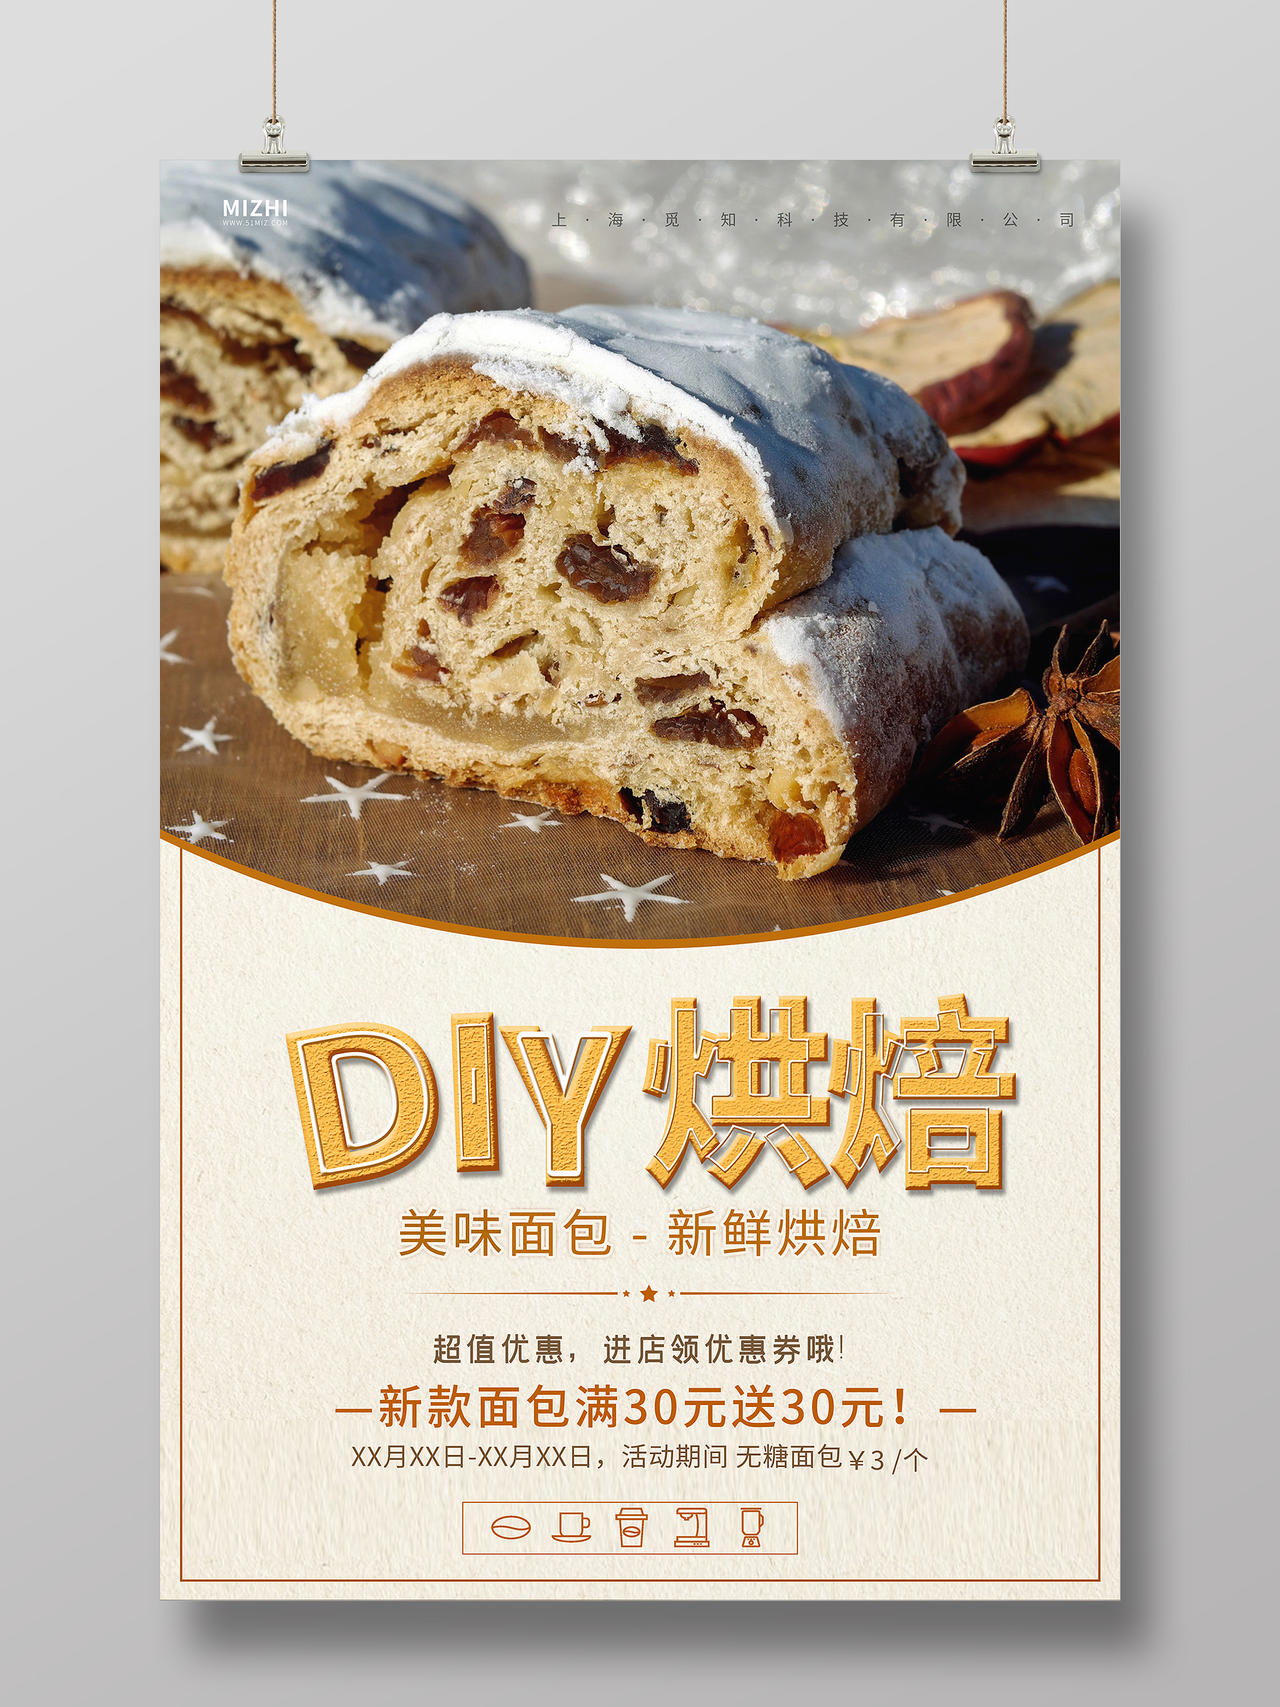 简约大气DIY烘焙美味面包宣传海报